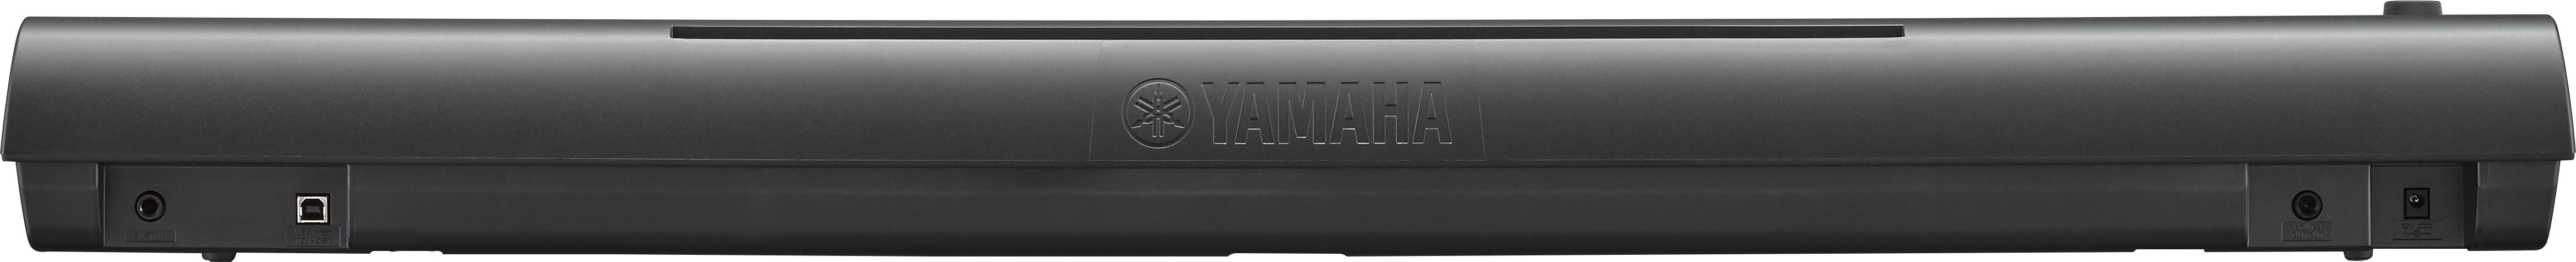 Yamaha Np-12 - Black - Piano digital portatil - Variation 2